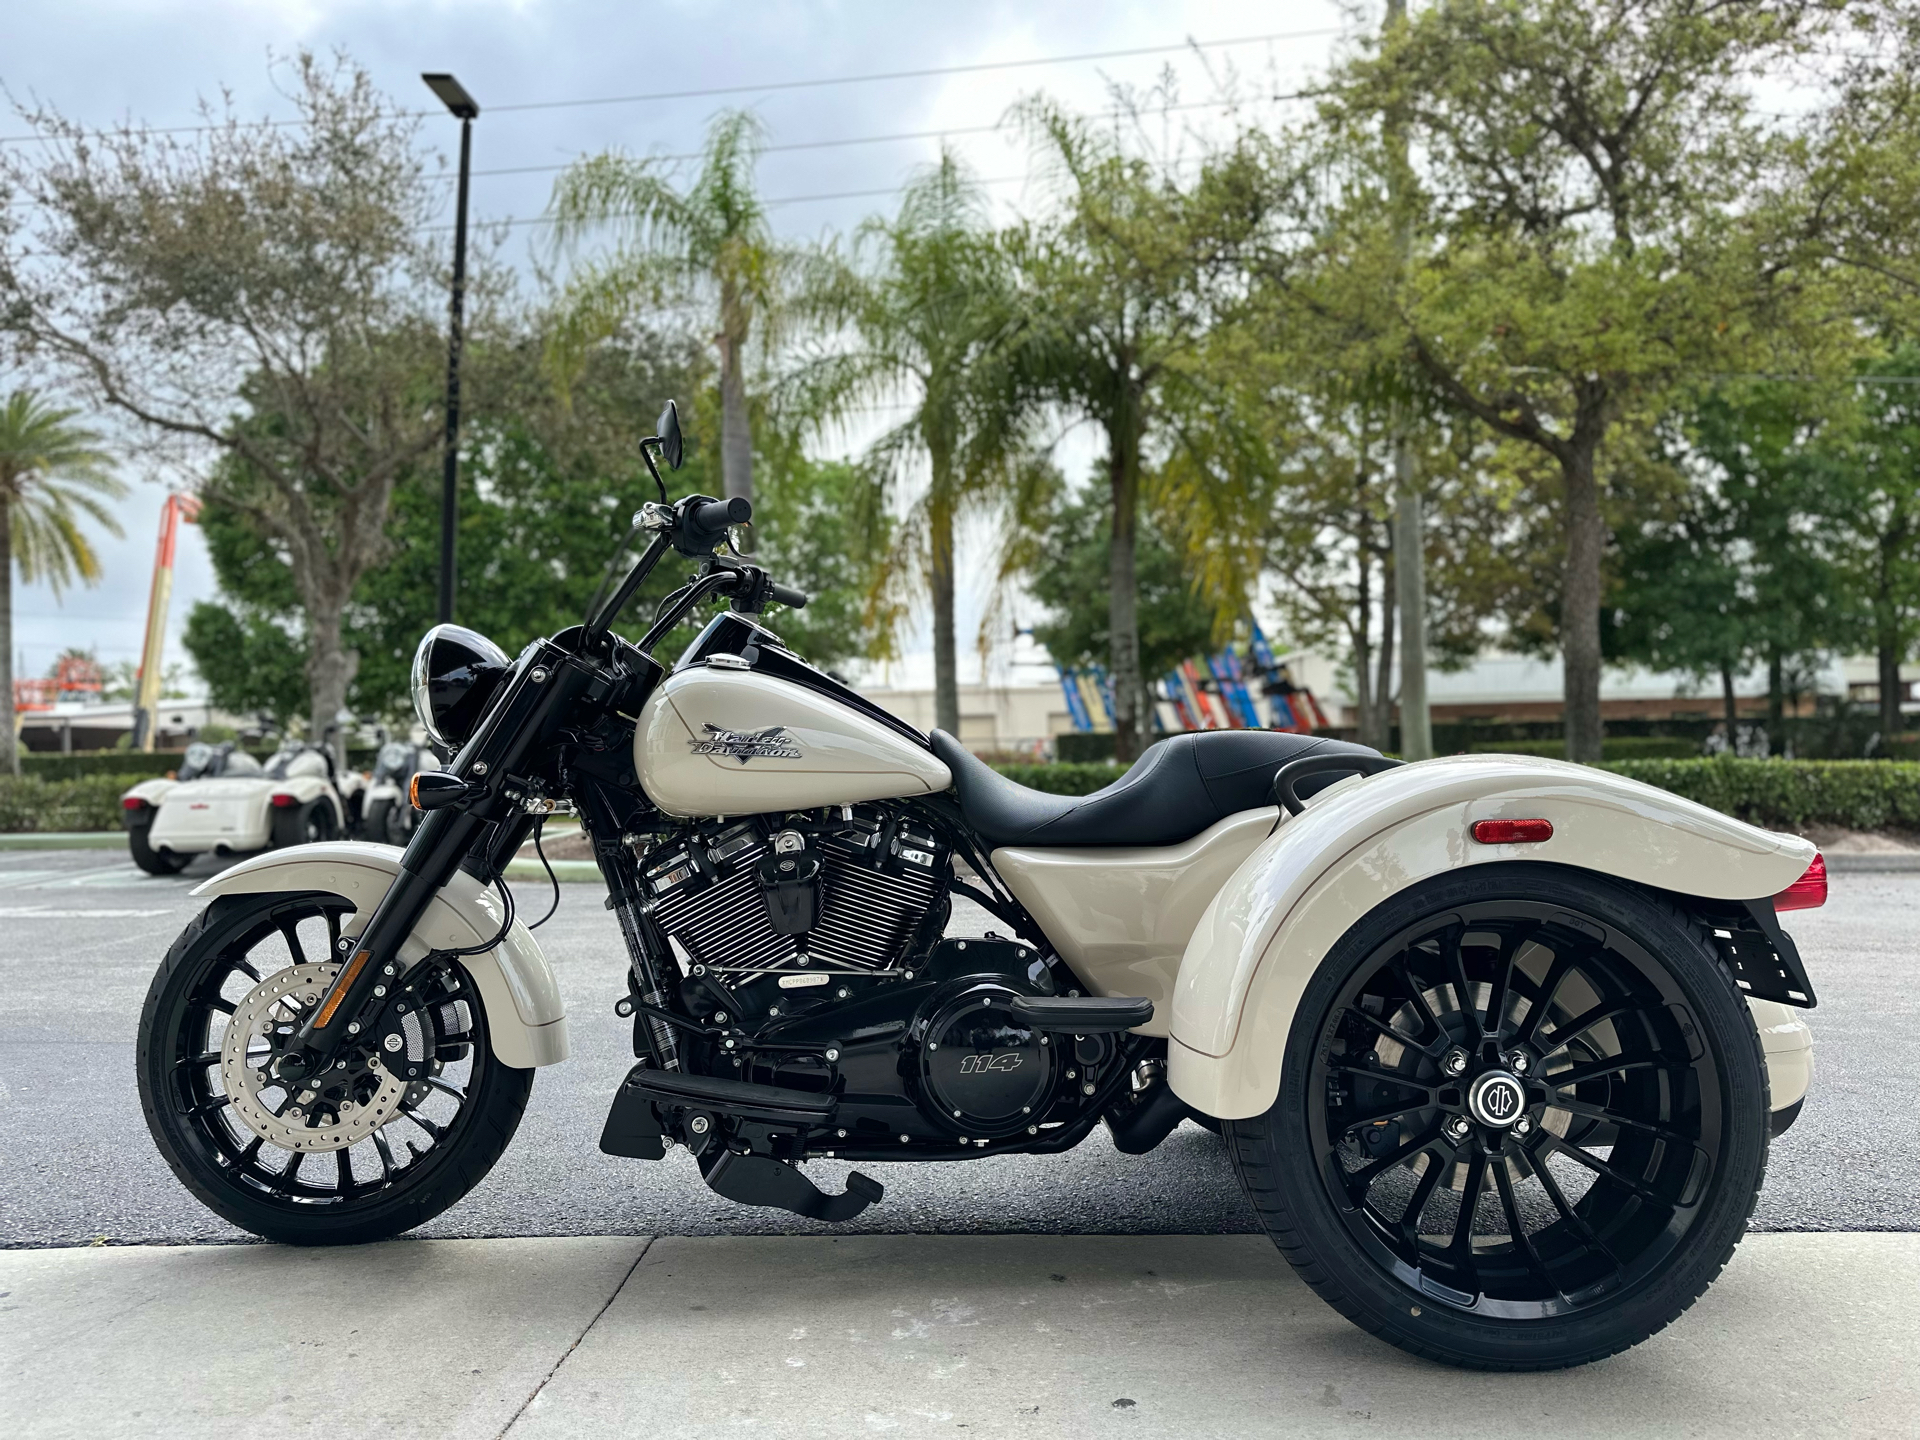 2023 Harley-Davidson Freewheeler® in Sanford, Florida - Photo 4